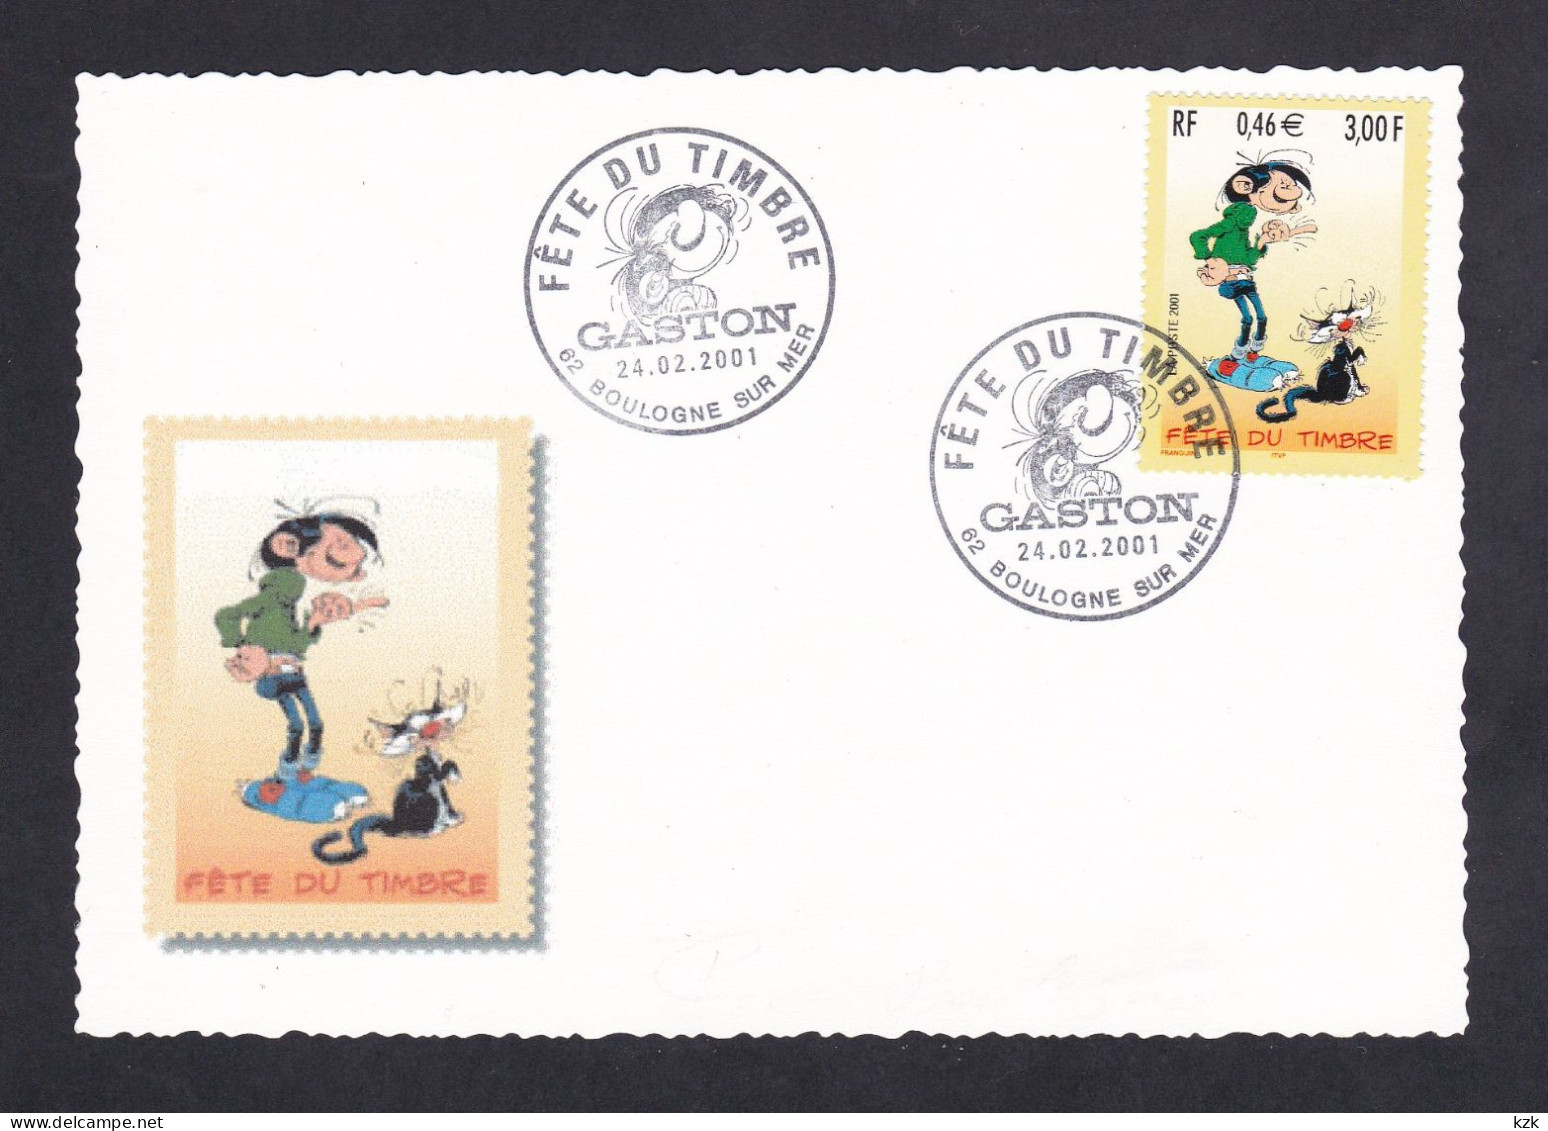 2 09	0109	-	Fête Du Timbre - Boulogne 24/02/2001 - Tag Der Briefmarke